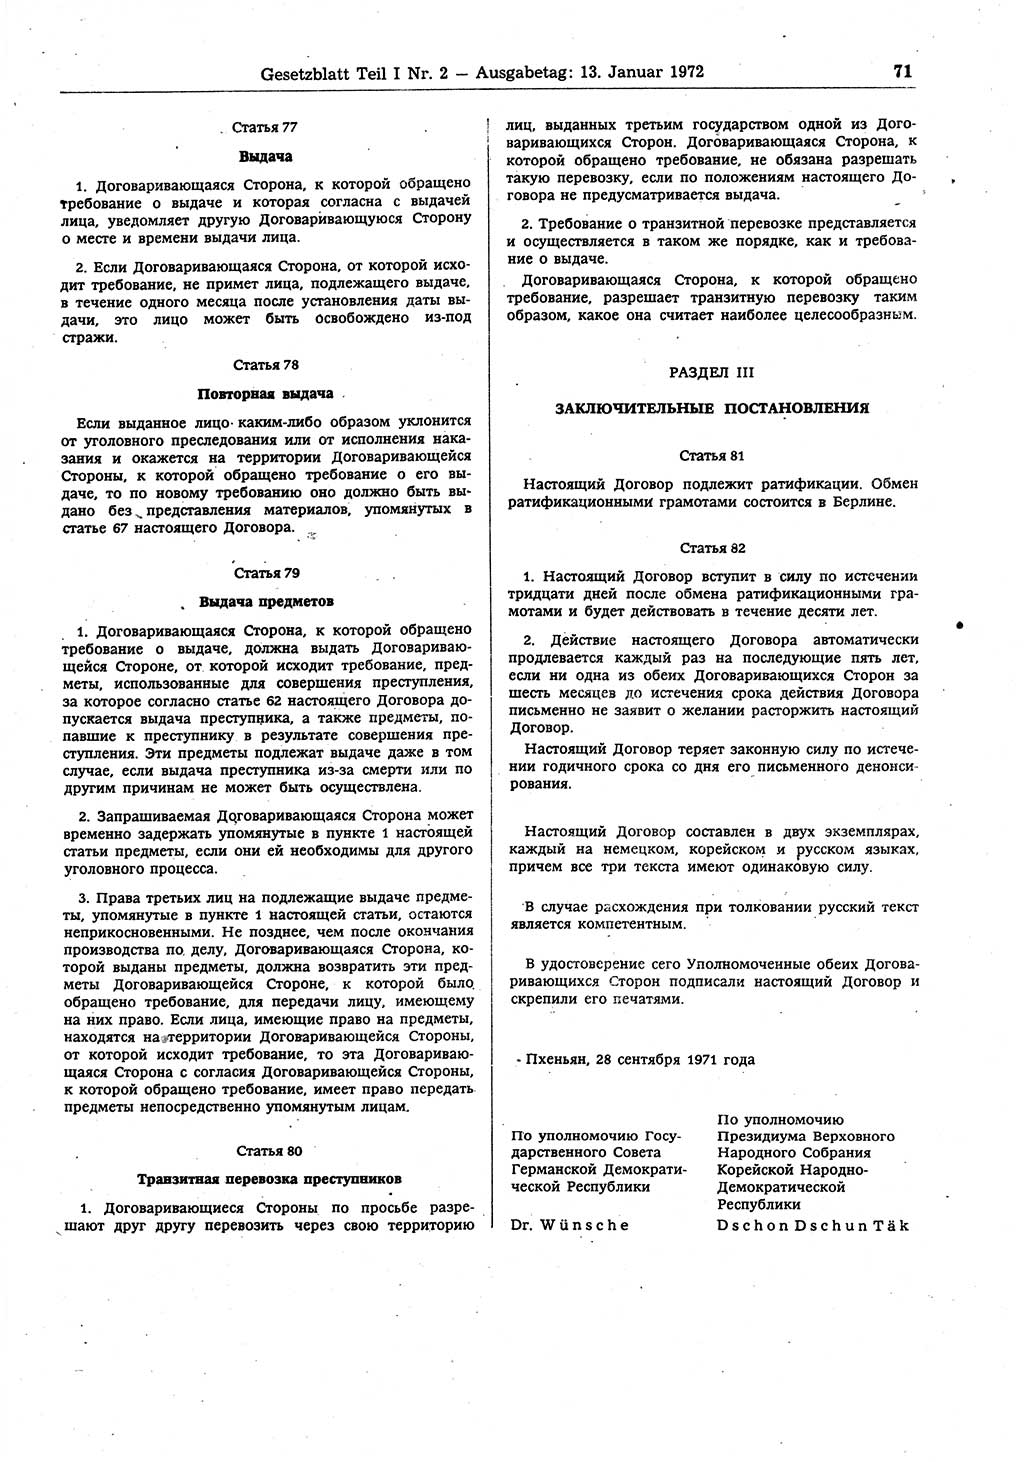 Gesetzblatt (GBl.) der Deutschen Demokratischen Republik (DDR) Teil Ⅰ 1972, Seite 71 (GBl. DDR Ⅰ 1972, S. 71)